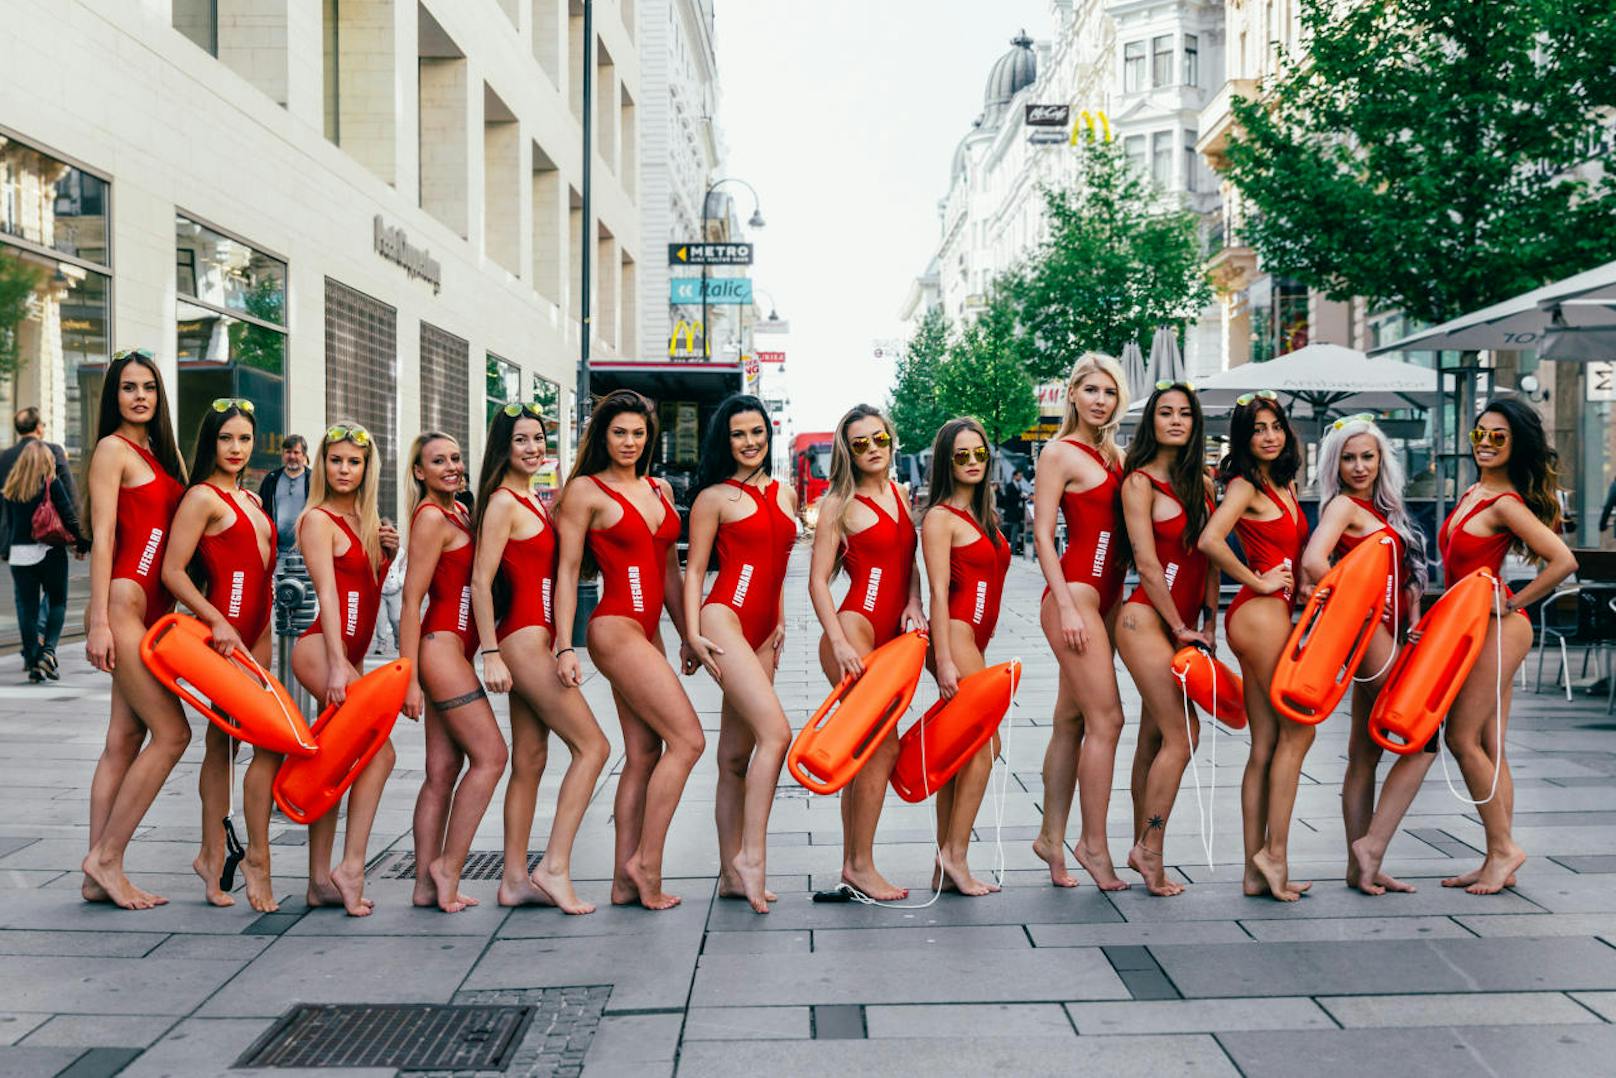 Fotoshooting mit den Miss Vienna Kandidatinnen als Baywatch-Nixen in der Wiener Kärntner Straße.